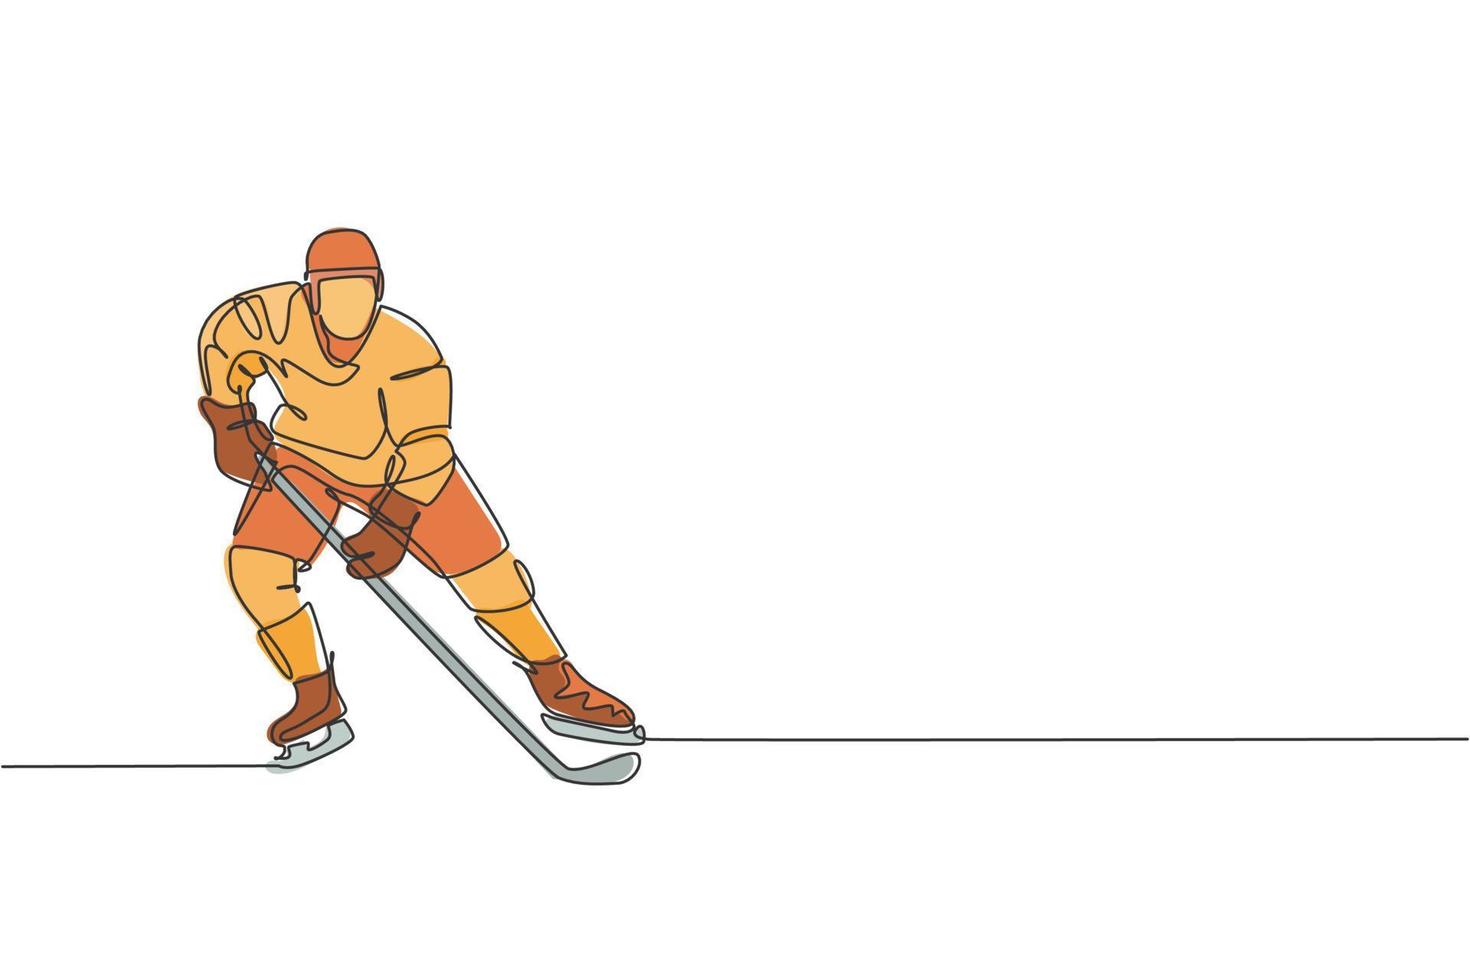 een doorlopende lijntekening van een jonge professionele ijshockeyspeler die traint en oefent op het ijsbaanstadion. gezond extreem sportconcept. dynamische enkele lijn tekenen ontwerp vectorillustratie vector